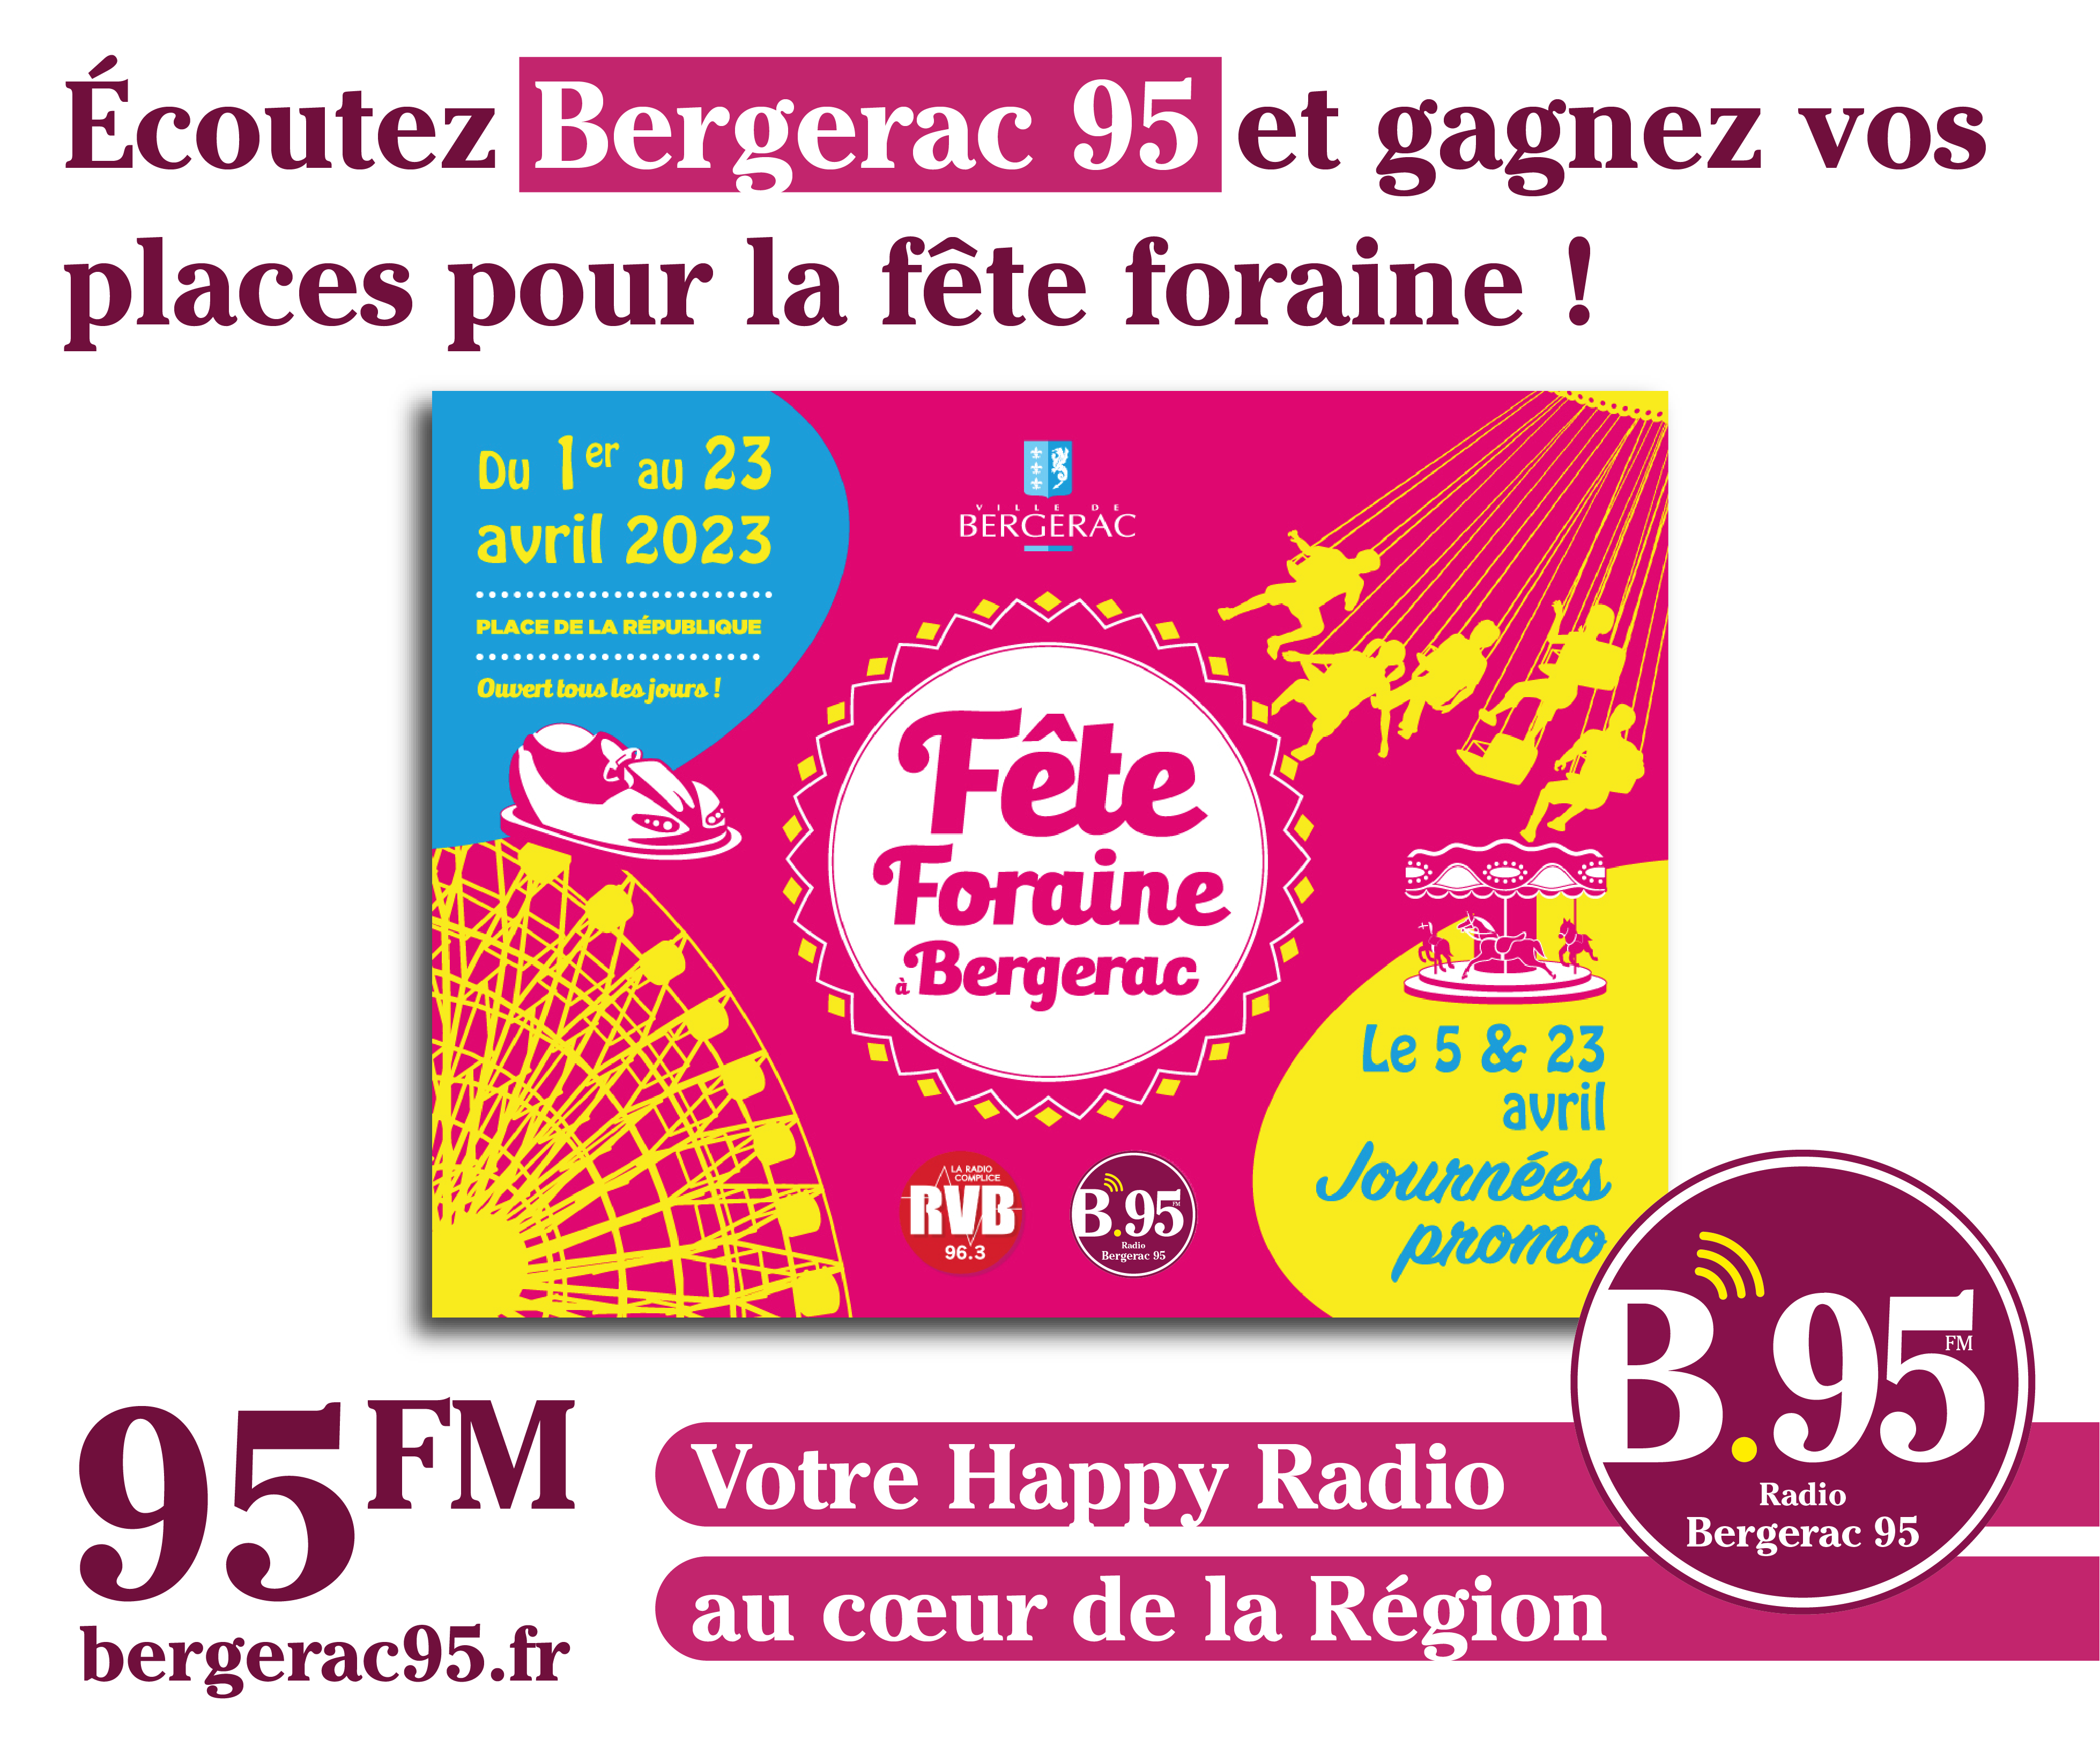 You are currently viewing Écoutez Bergerac 95 et gagnez vos places pou la Fête foraine